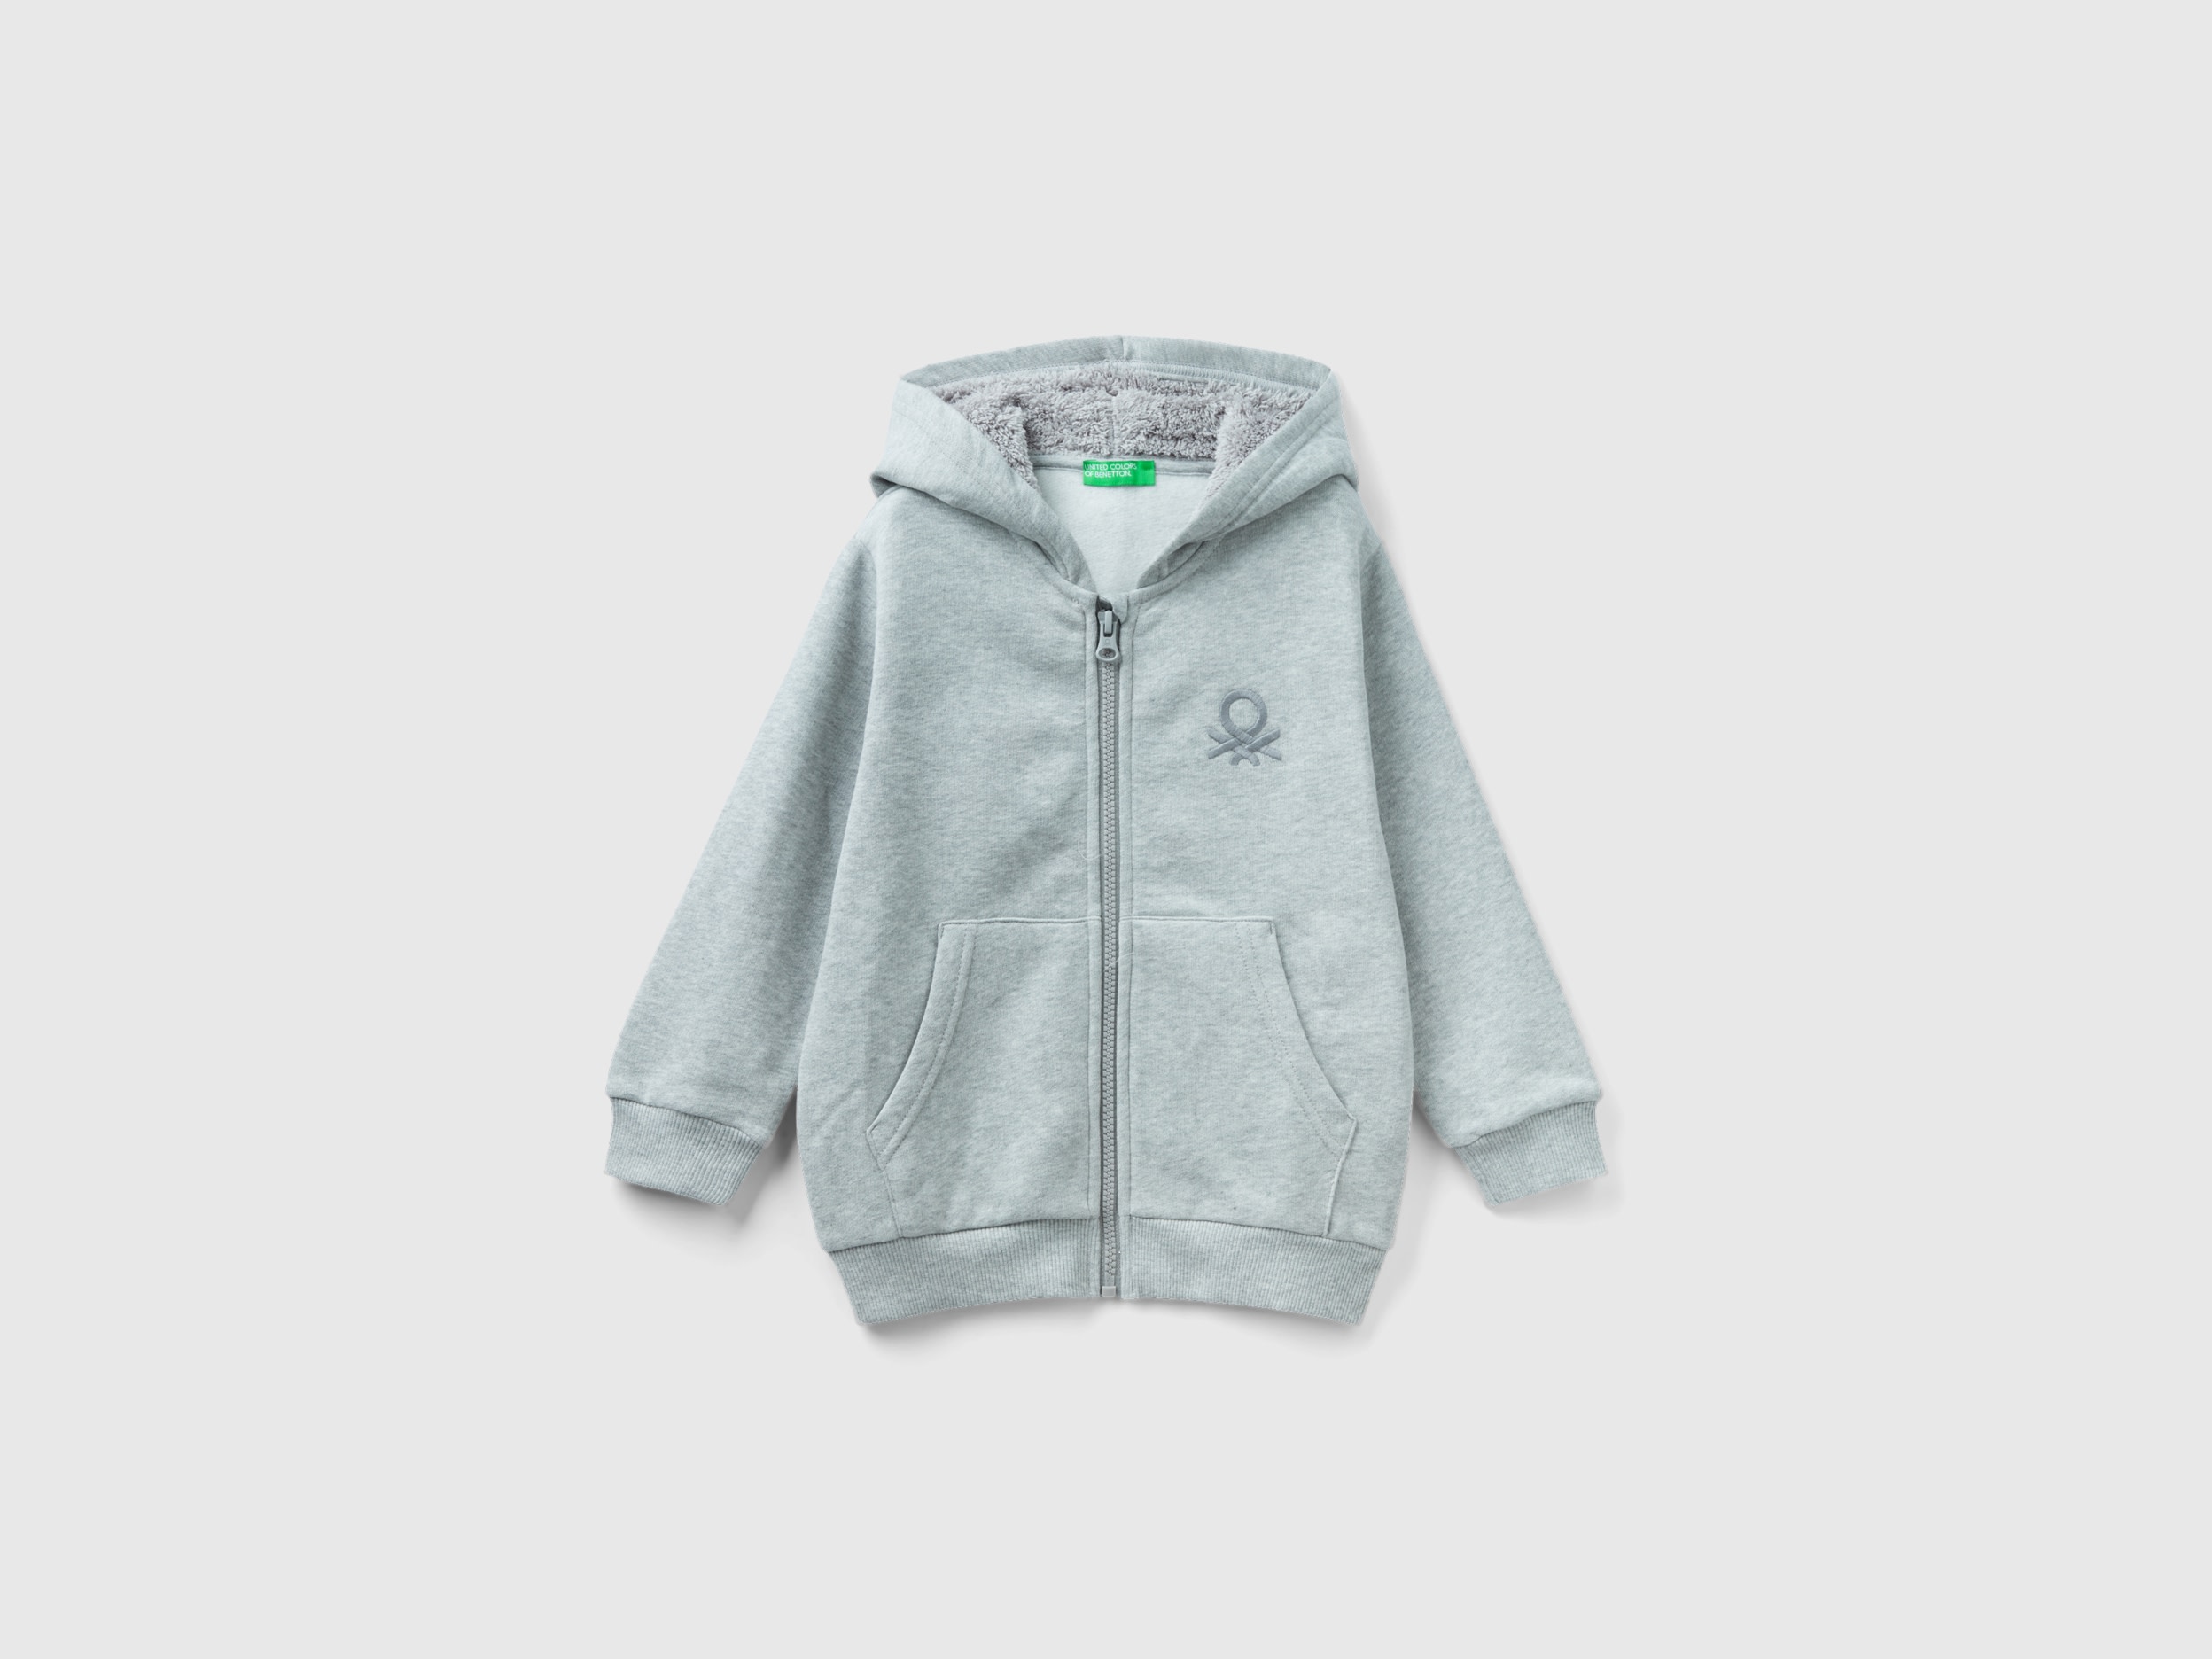 Benetton, Sweatshirt With Lined Hood, size 2-3, Gray, Kids